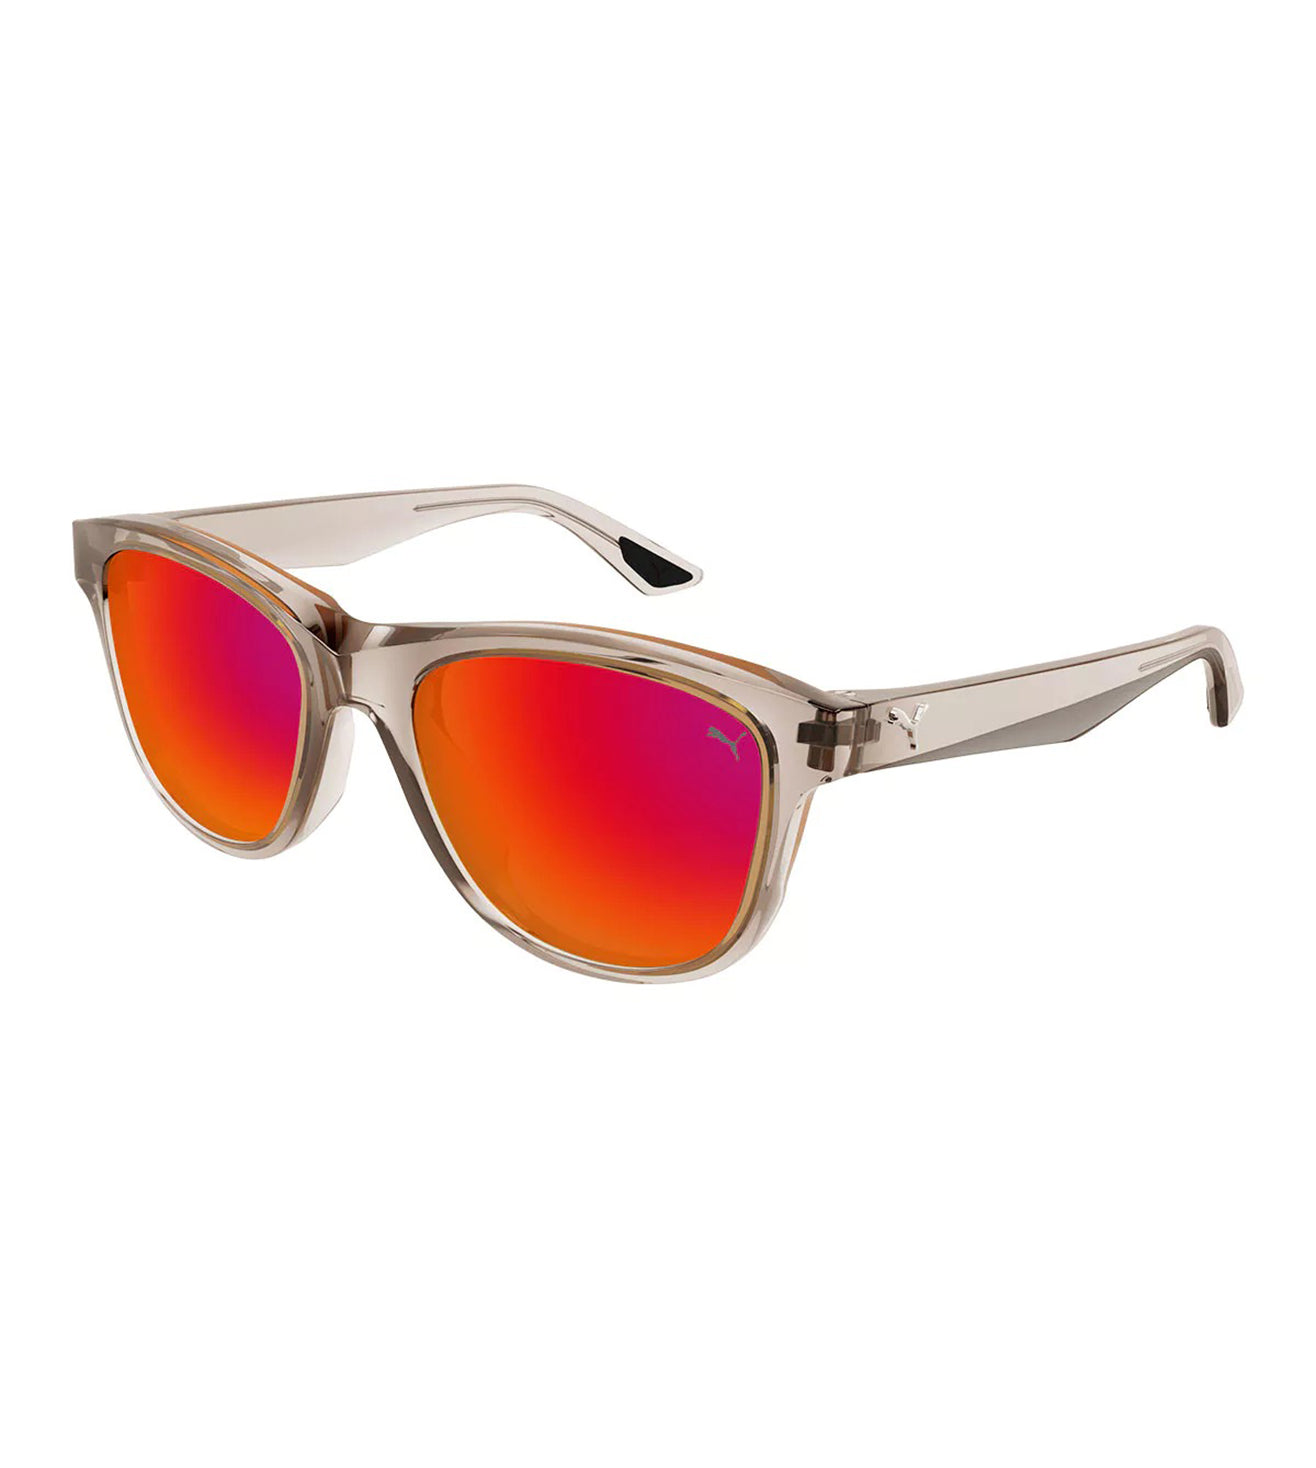 Puma Unisex Red Gradient Square Sunglasses